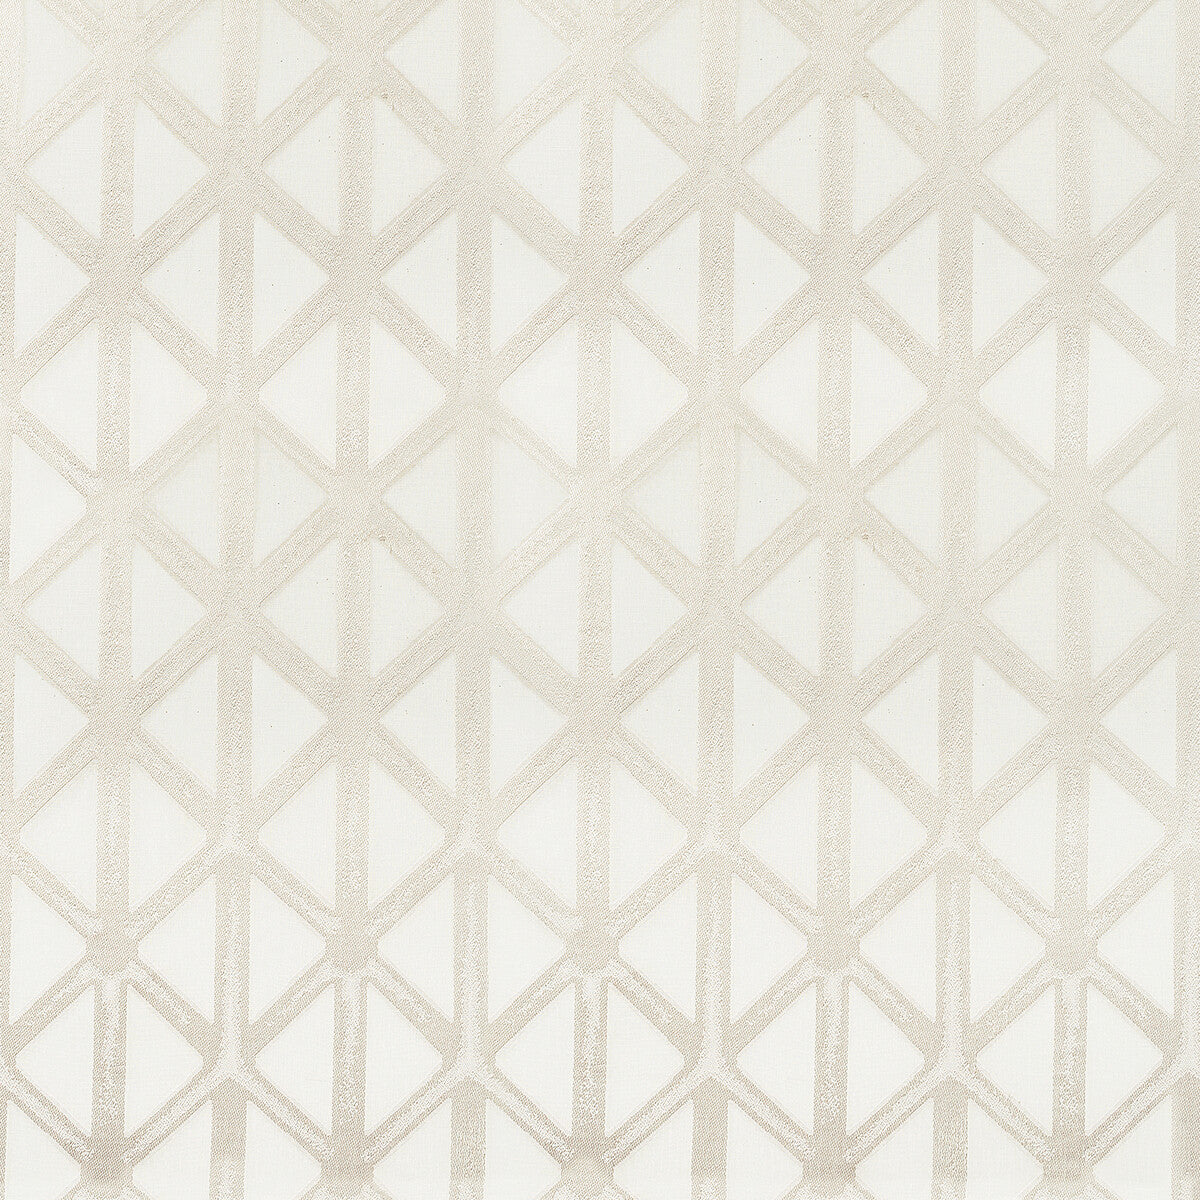 Kravet Basics fabric in 4763-111 color - pattern 4763.111.0 - by Kravet Basics